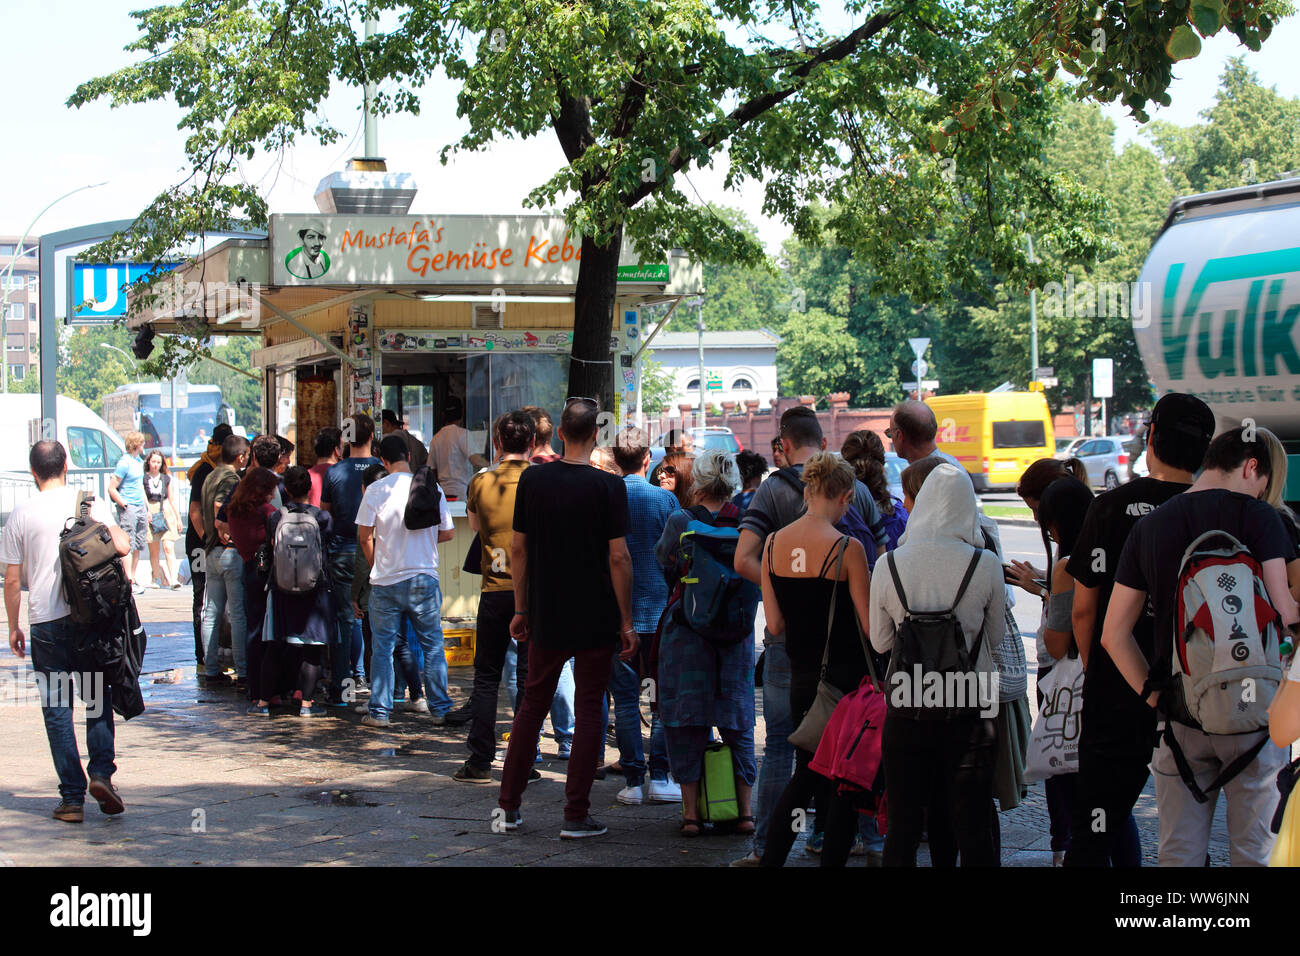 Alemania, Berlín, cola delante del stand de kebab Foto de stock